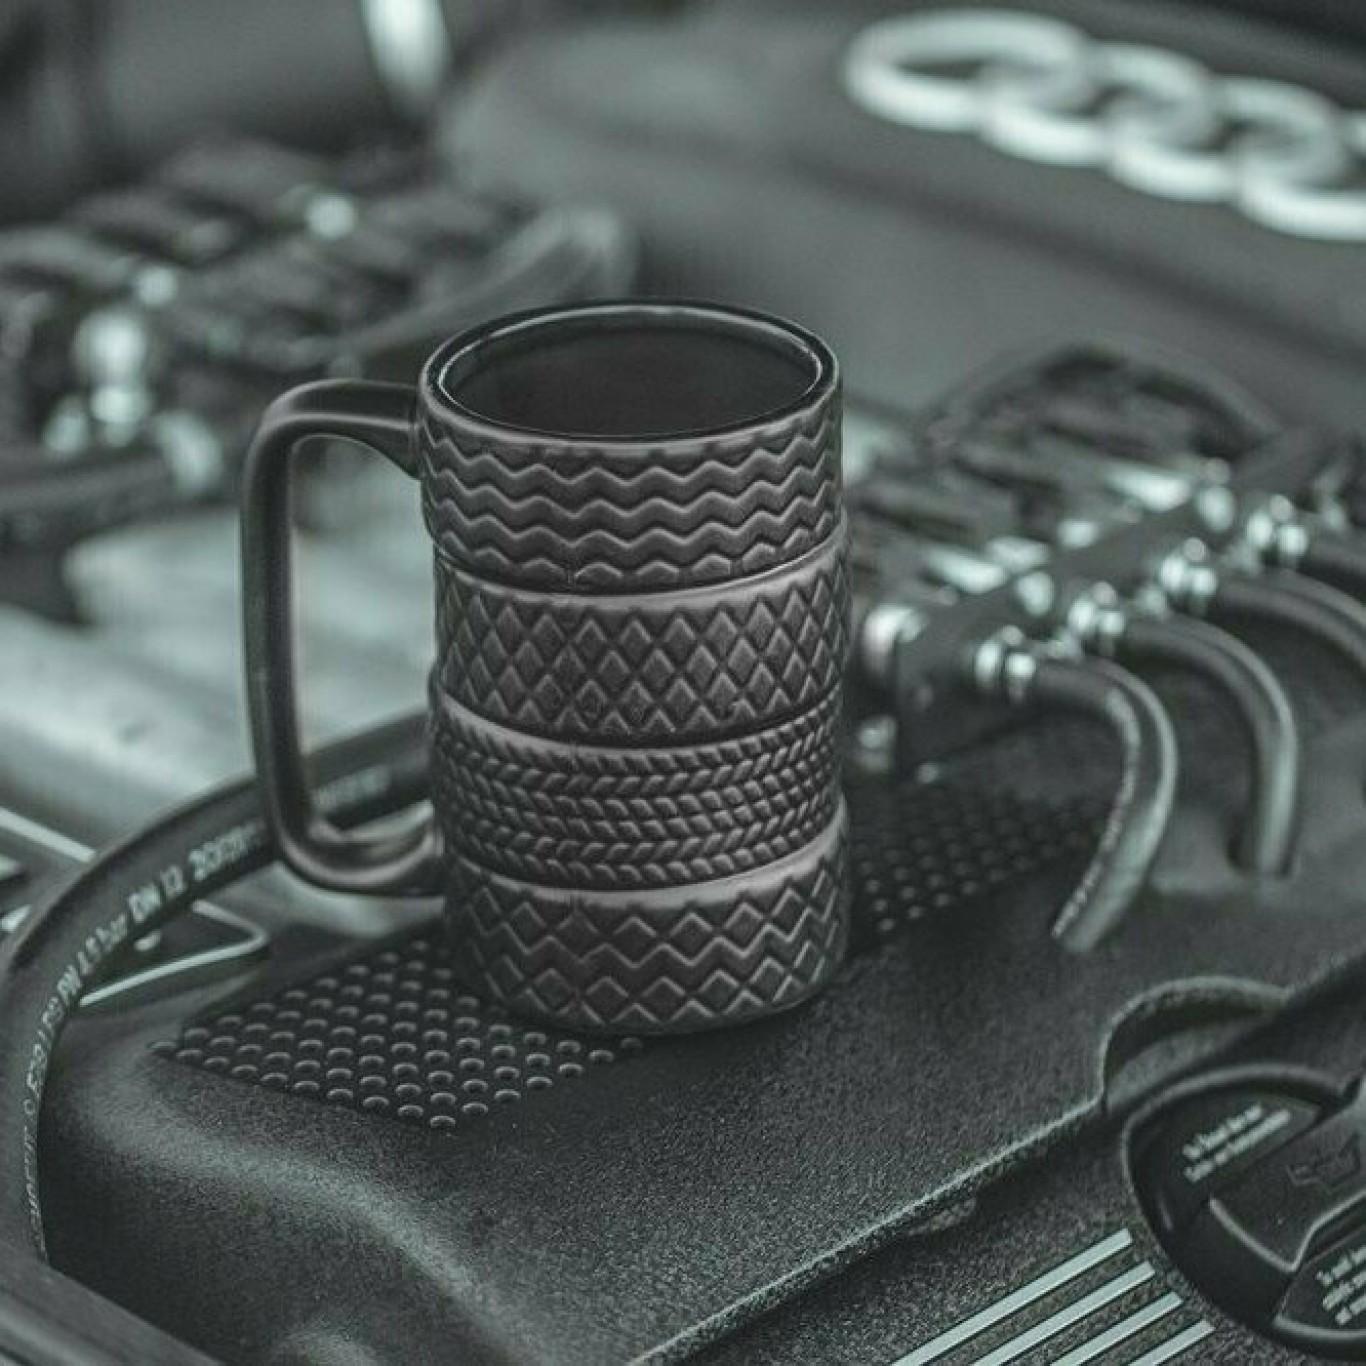 Τρισδιάστατη Κεραμική Κούπα Λάστιχα Μαύρη για Καφέ & Τσάι 450ml | Klikit.gr